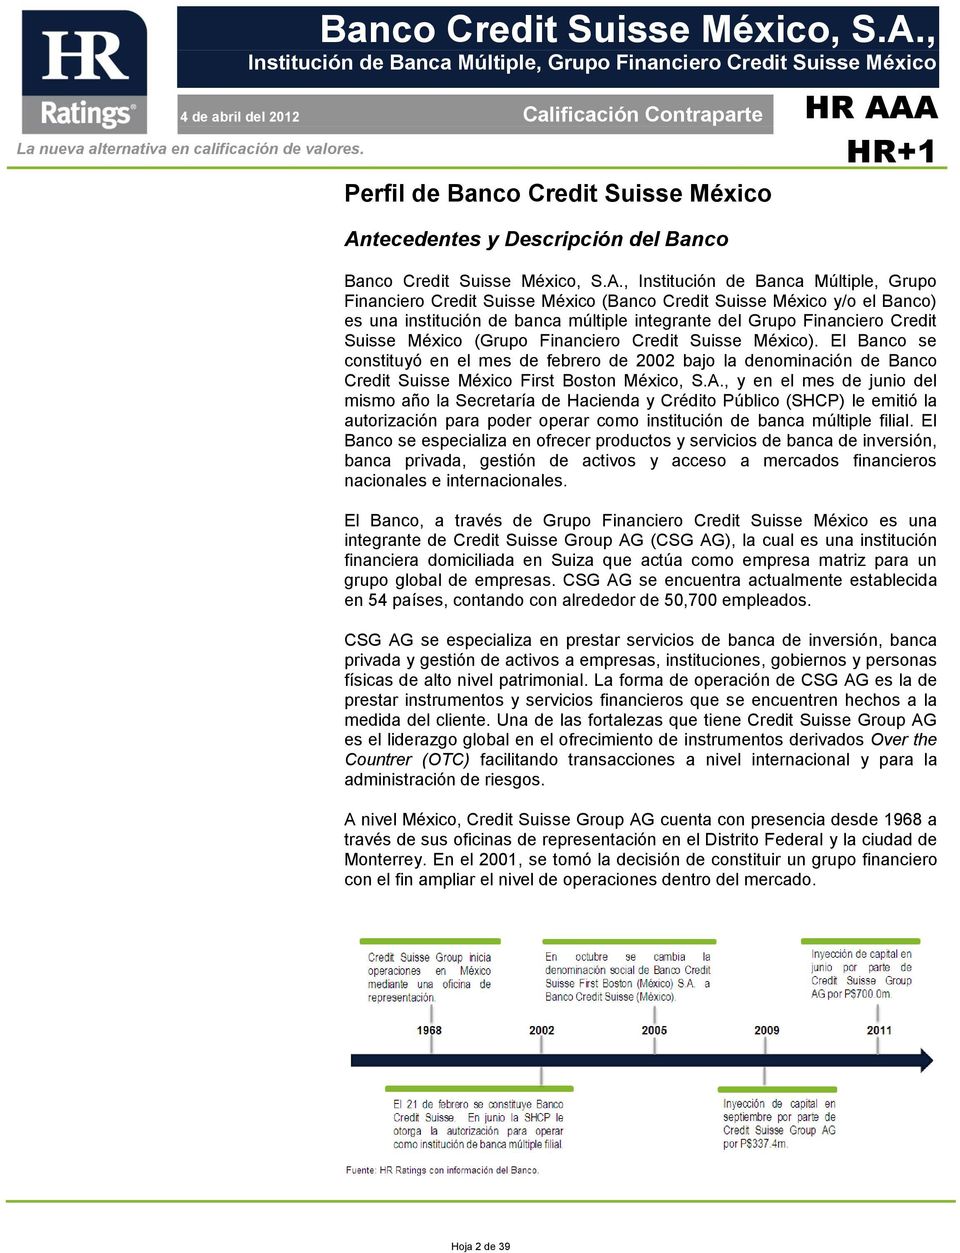 El Banco se constituyó en el mes de febrero de 2002 bajo la denominación de Banco Credit Suisse México First Boston México, S.A.